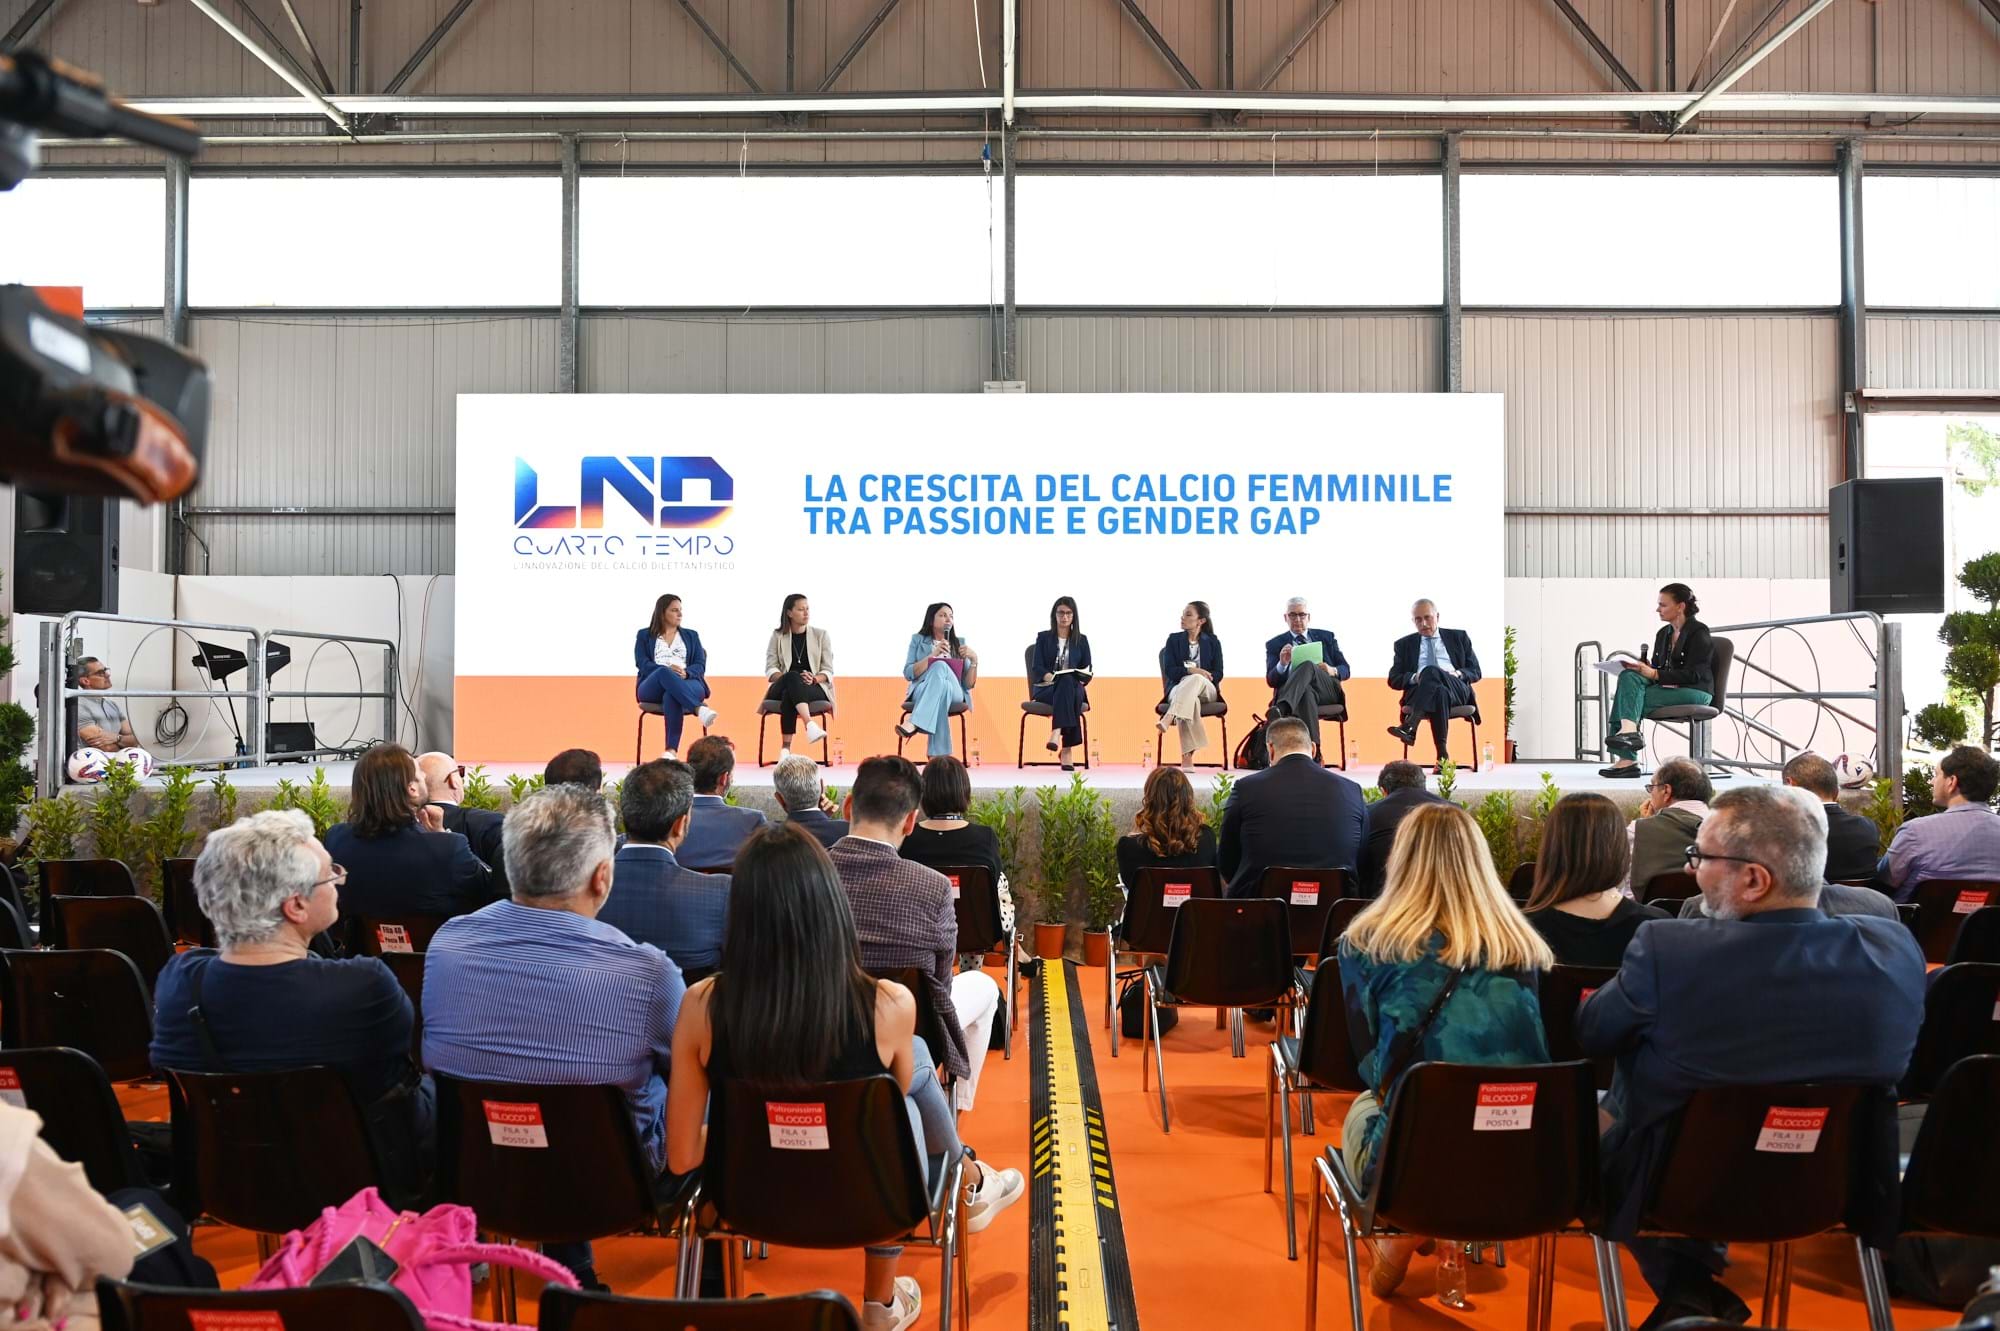 A Lanciano il 'Quarto Tempo' organizzato dalla LND: panel sul calcio femminile